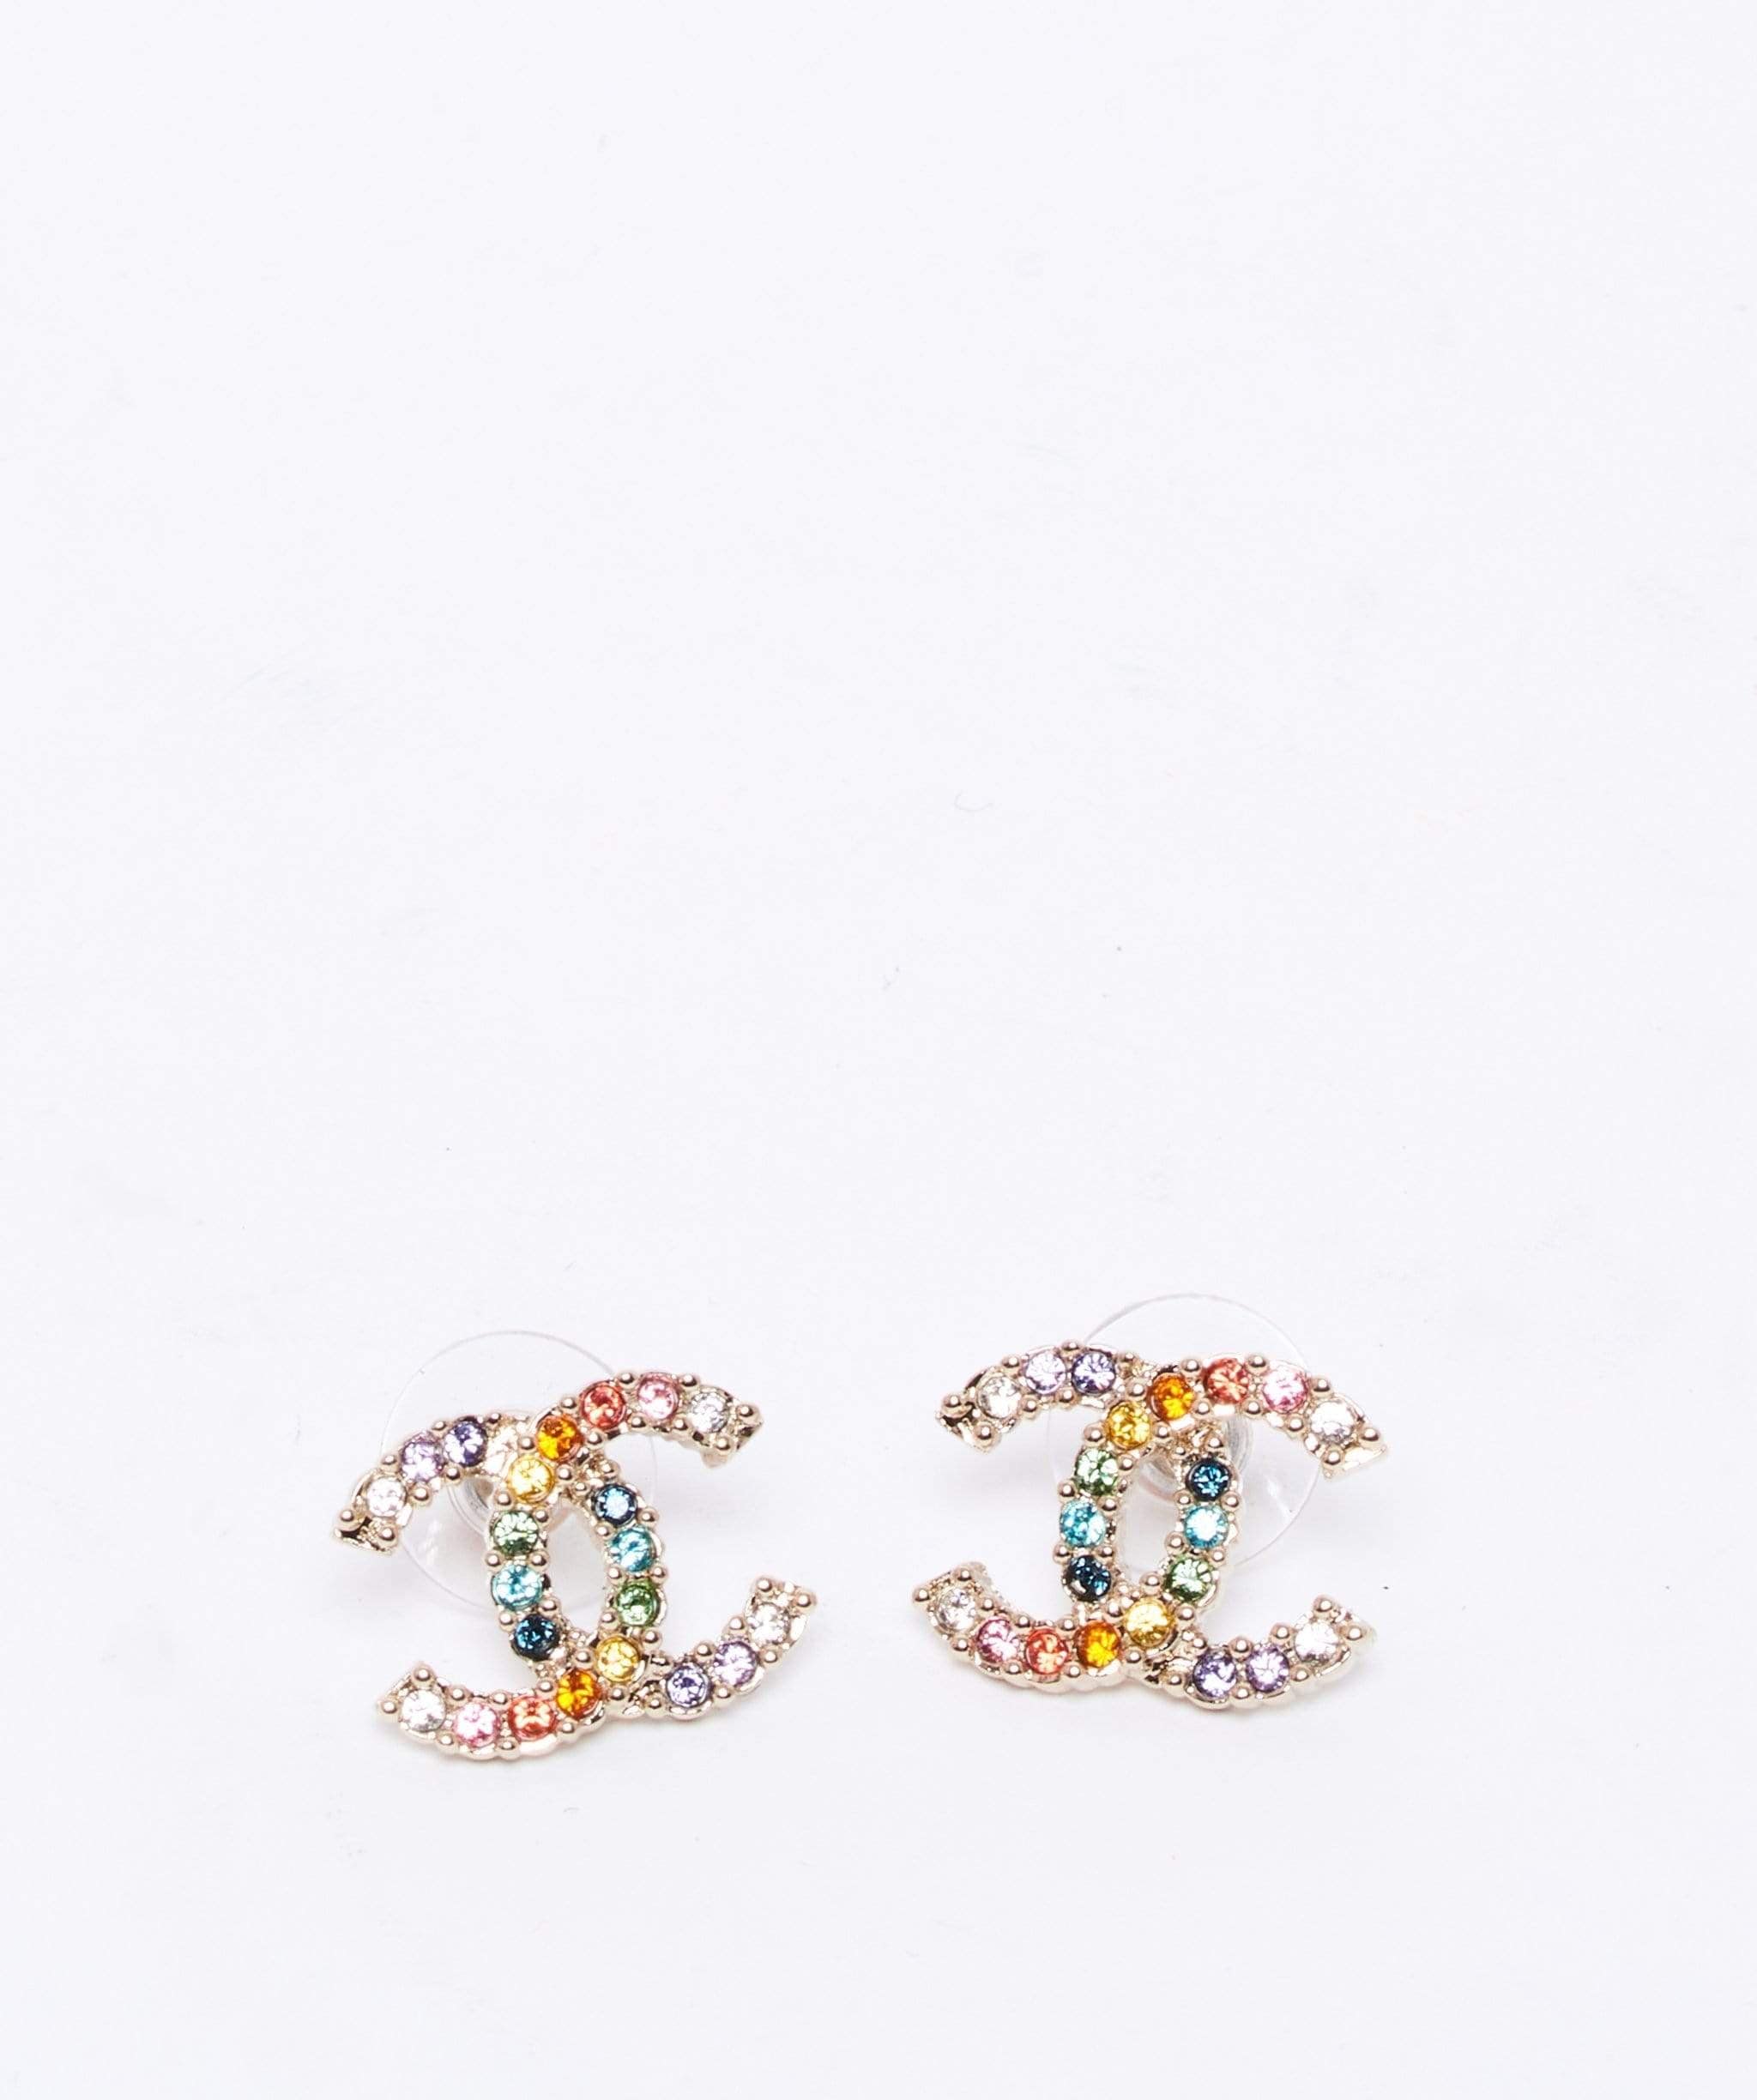 Chanel Chanel rainbow earrings